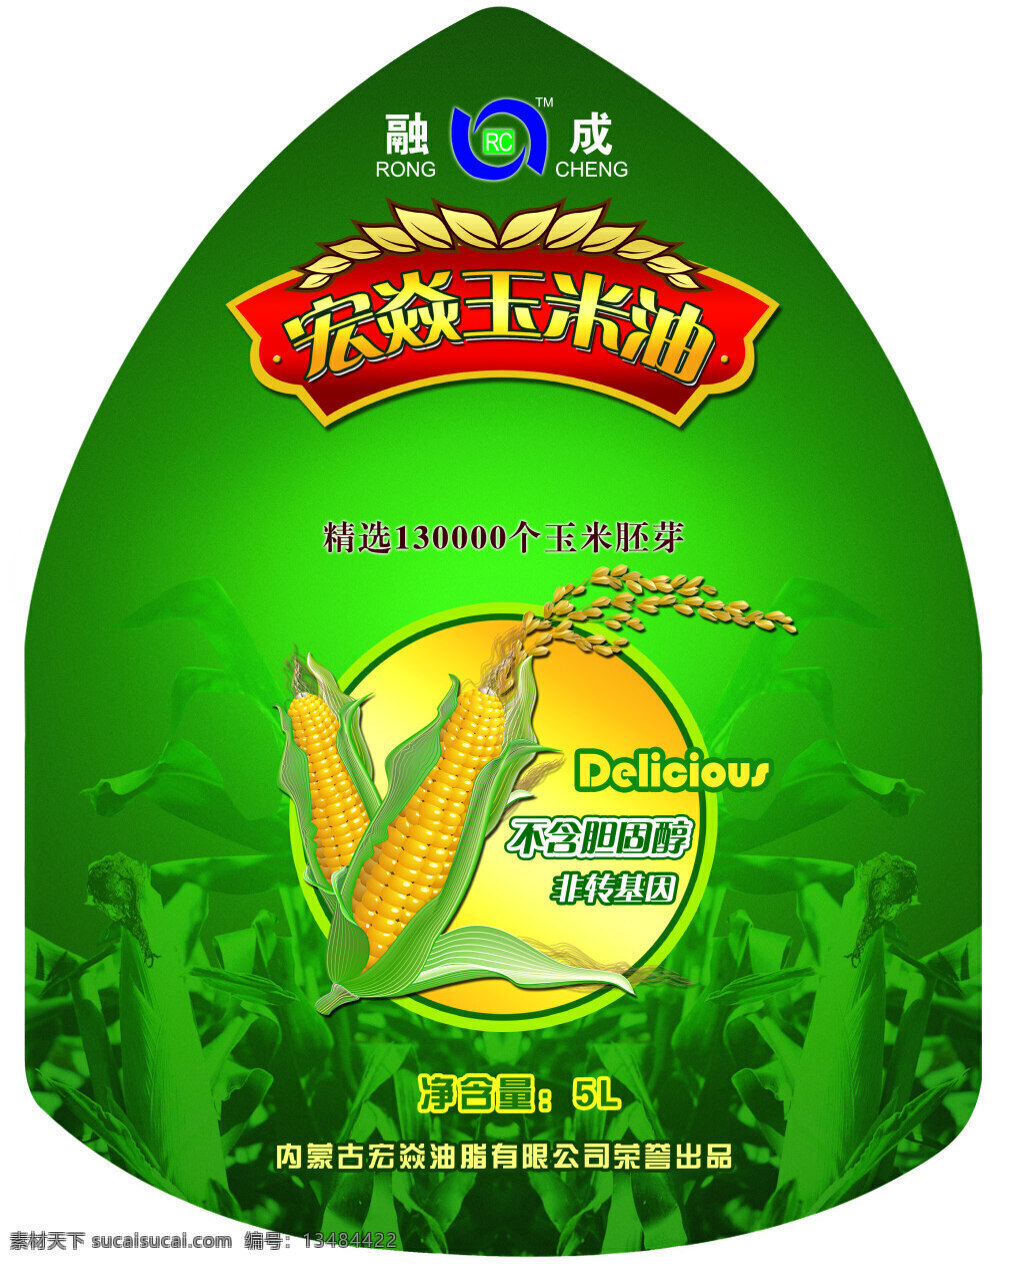 玉米油 包装 标签 包装标签 psd素材 绿色